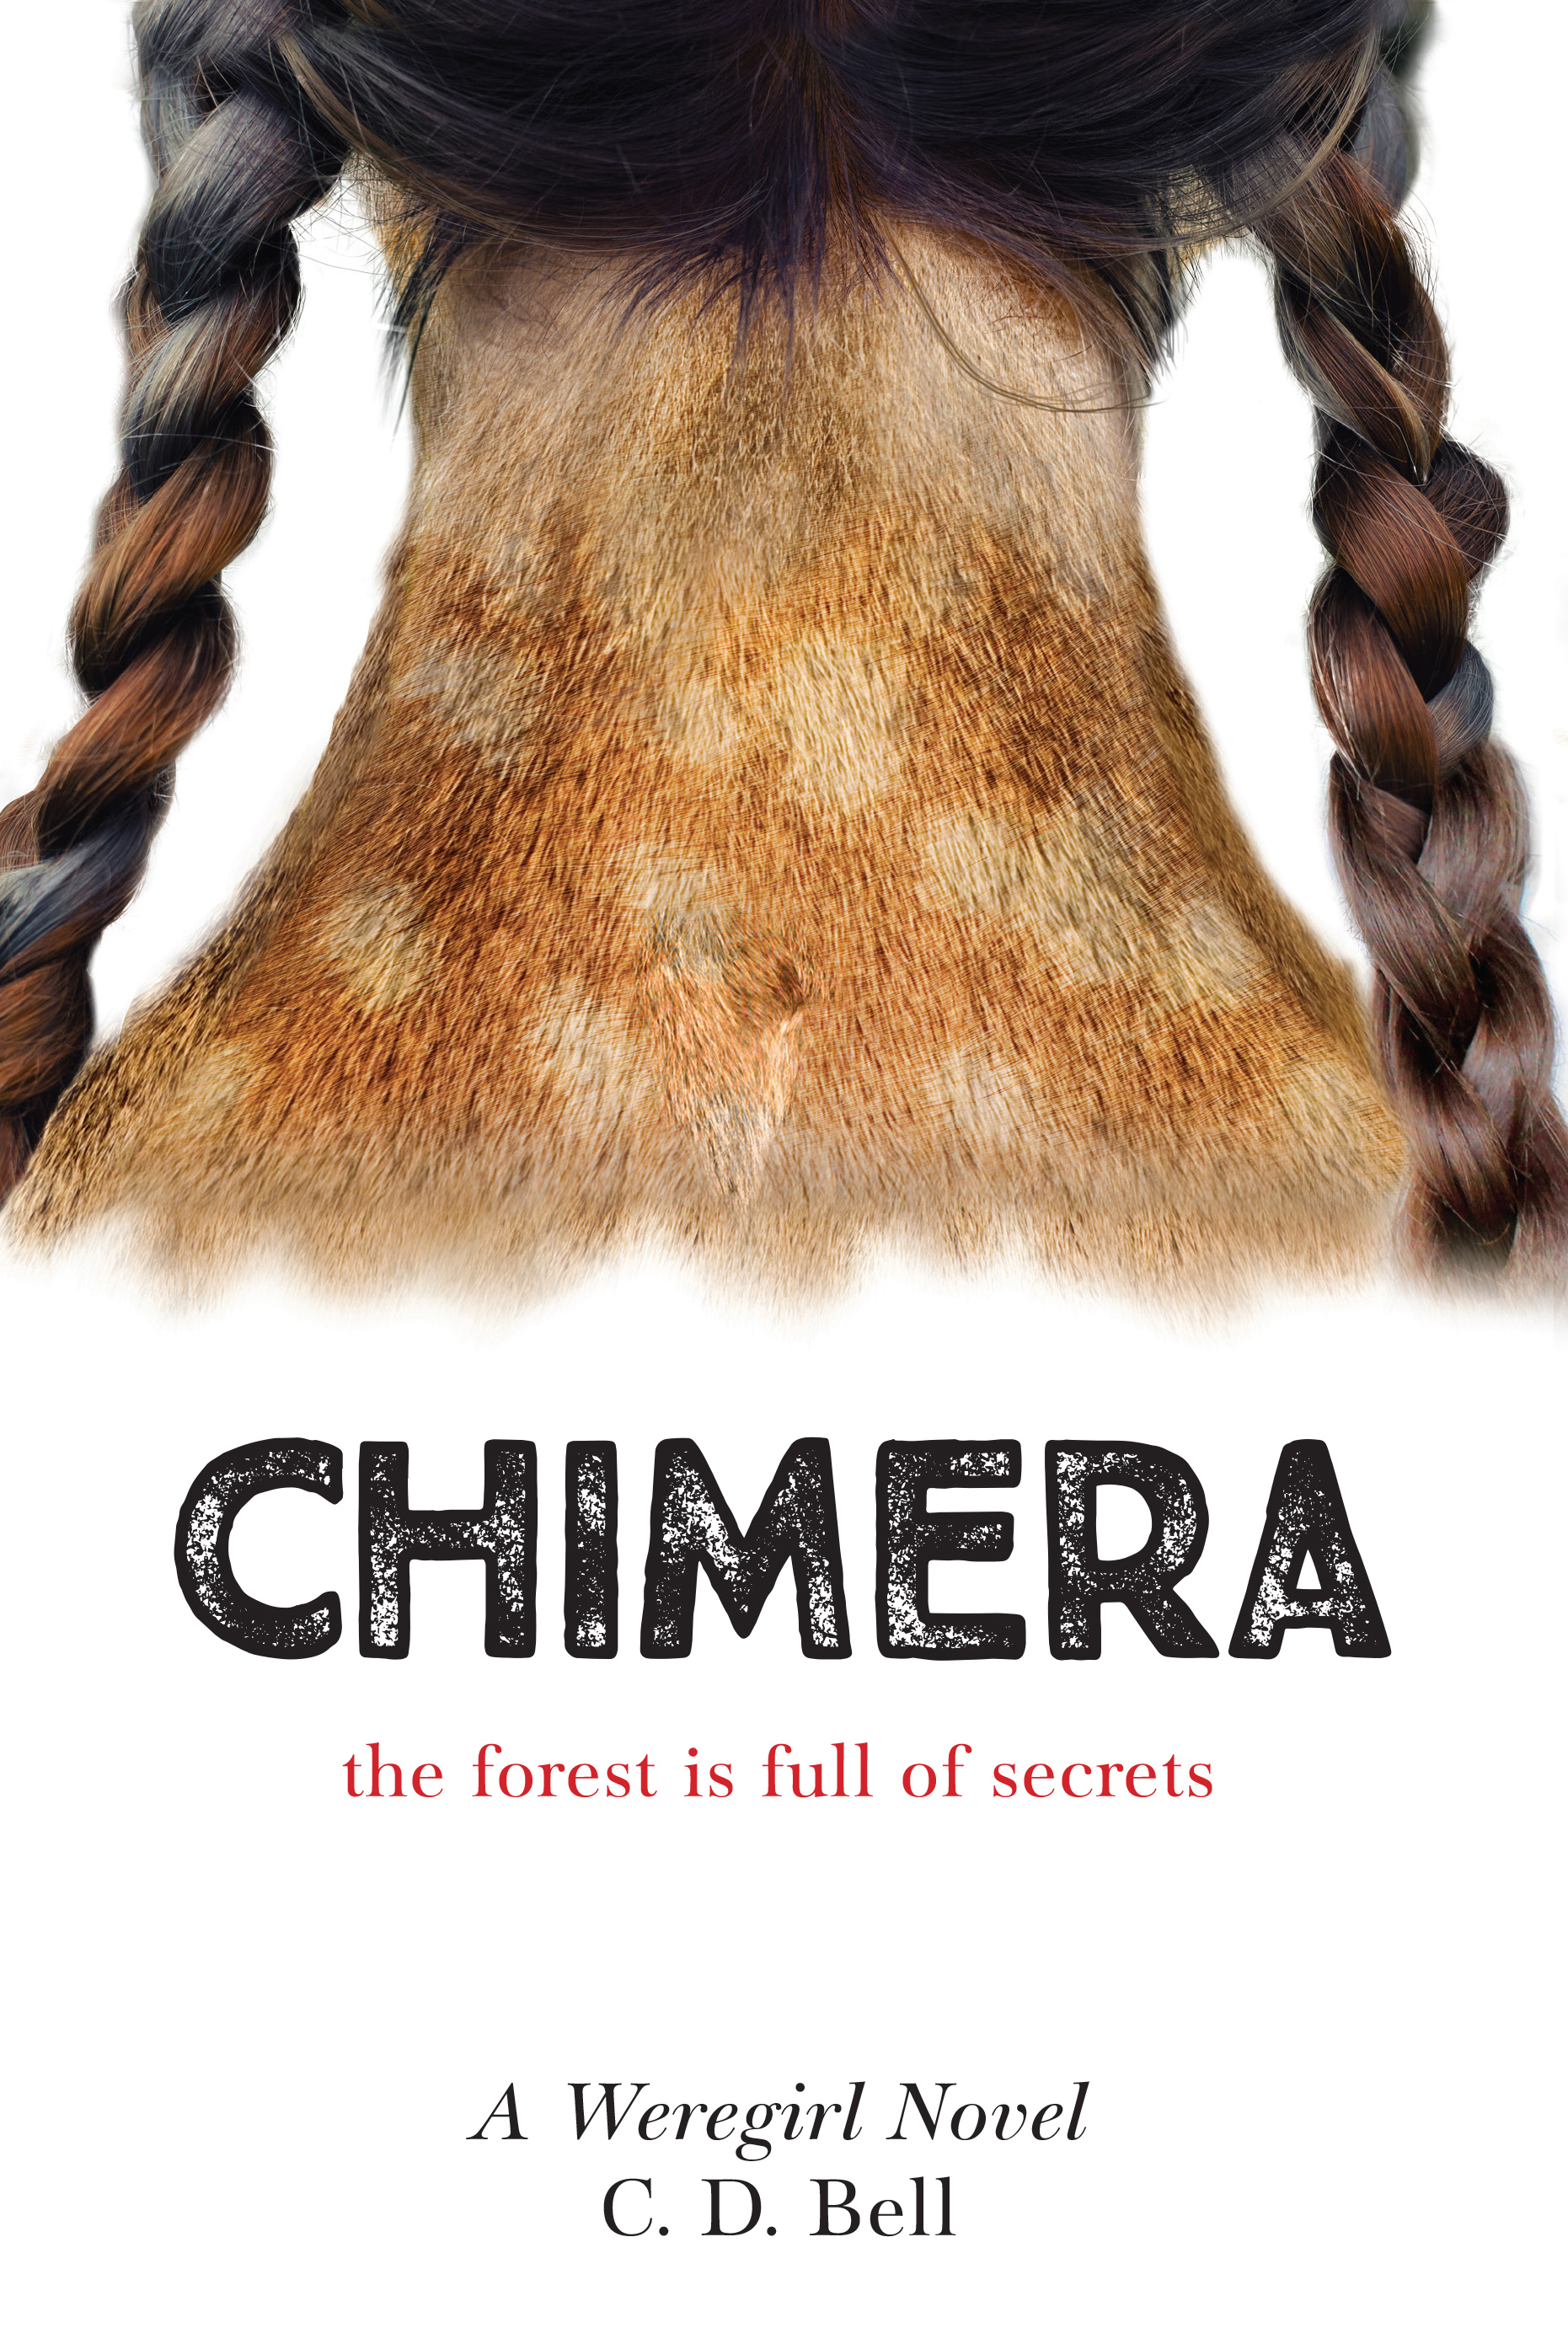 CHIMERA: A Weregirl Novel by C. D. Bell